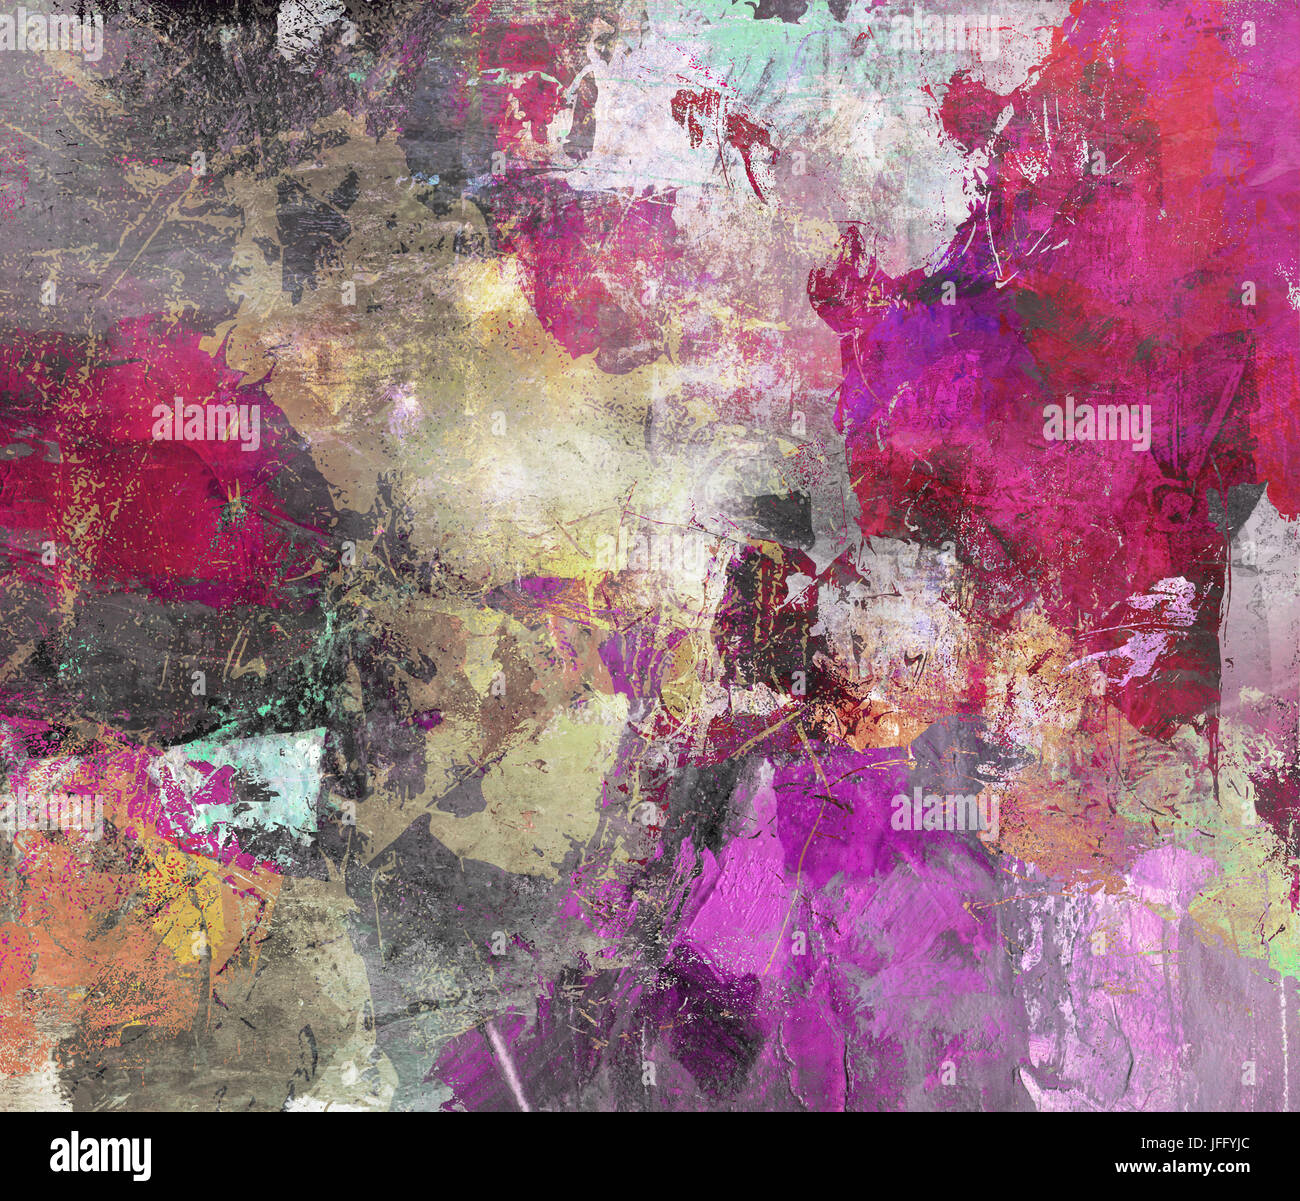 abstract mixed media artwork Stock Photo